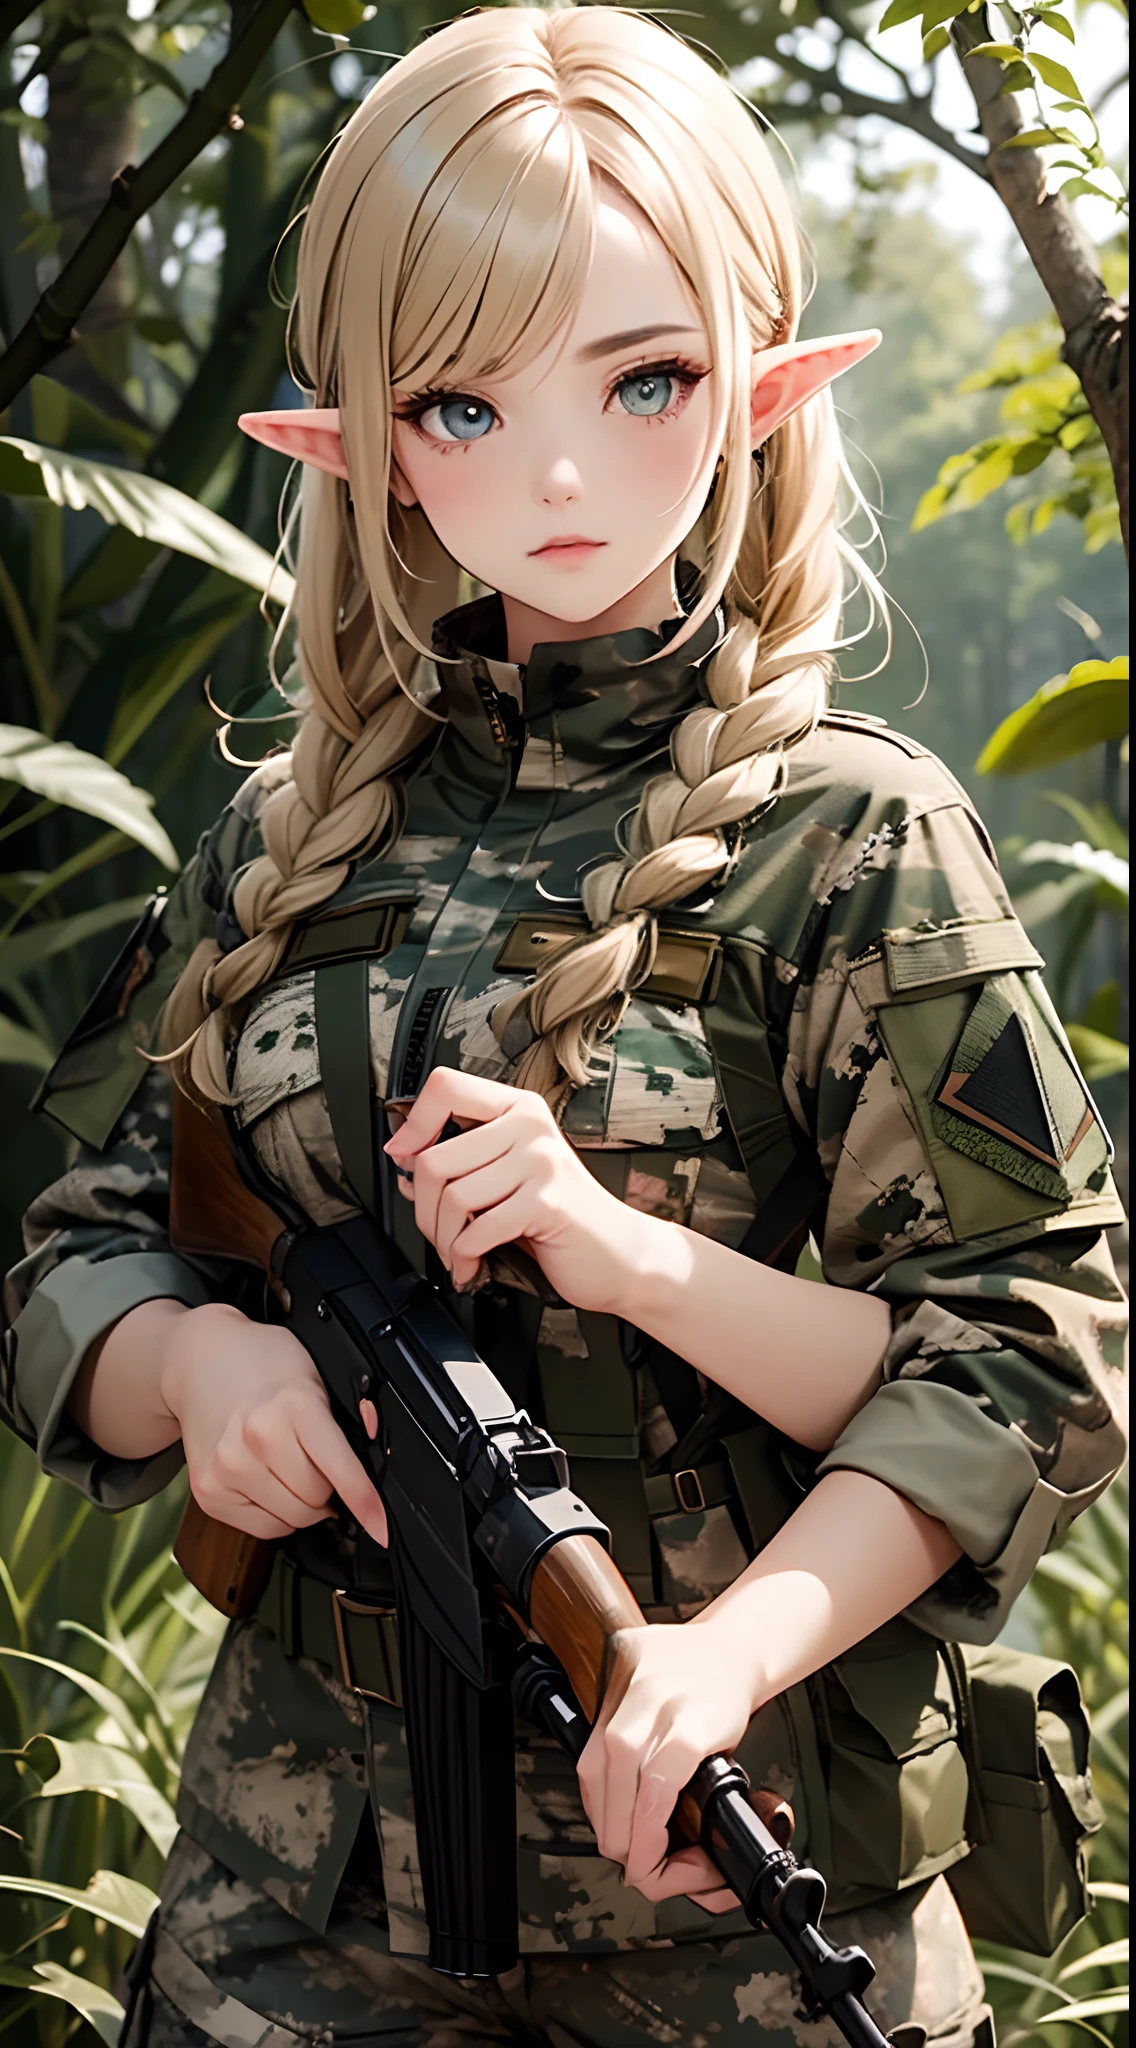 Женщина-эльф-солдат, в камуфляжной камуфляжной военной форме «Пятнистый лес», Российская военная форма, подробные глаза, Подробные руки, подробное лицо, Детализированные волосы, (эльф с золотыми волосами), плетеная стрижка, держу снайперскую винтовку, Лесной фон